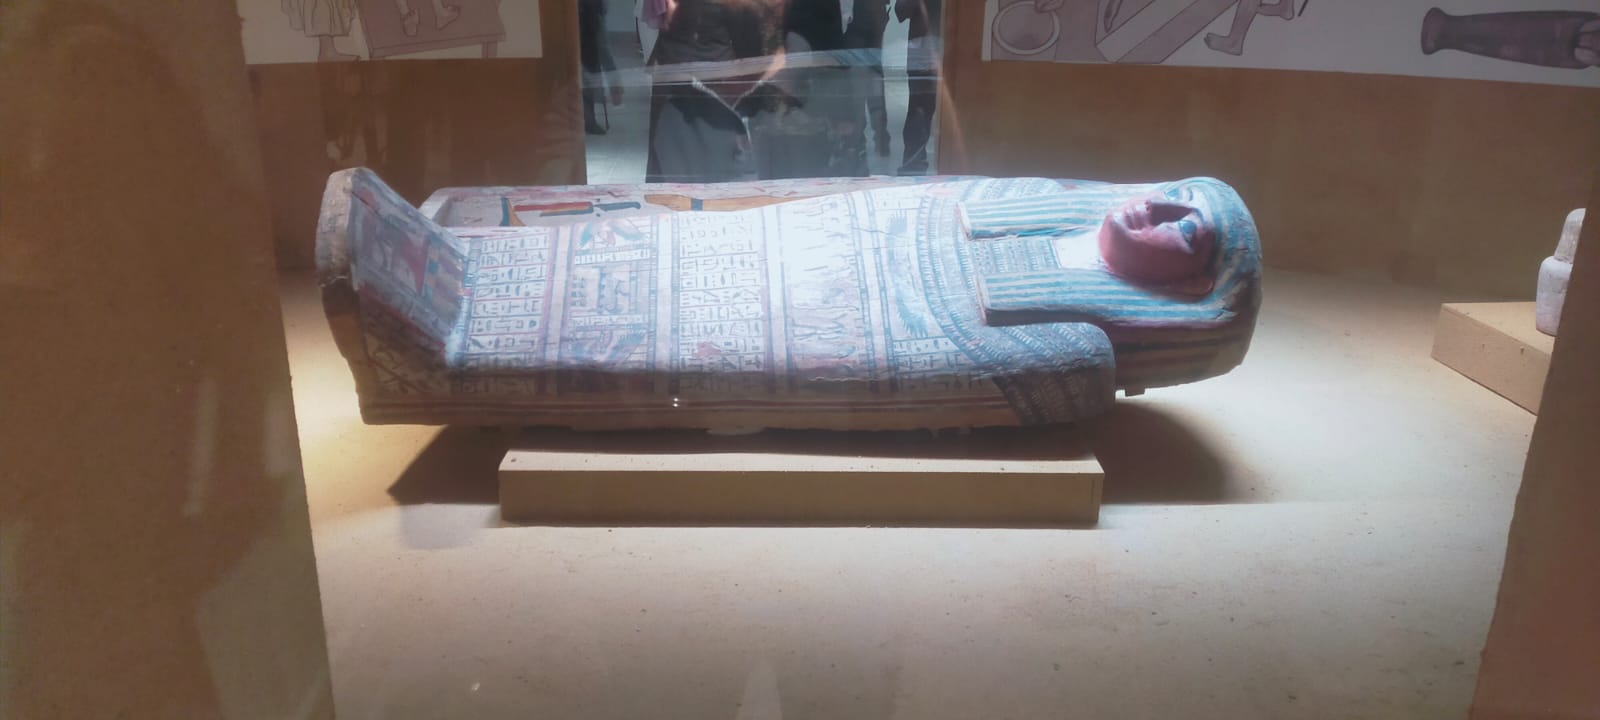 متحف جامعة عين شمس بقصر الزعفران  (6)